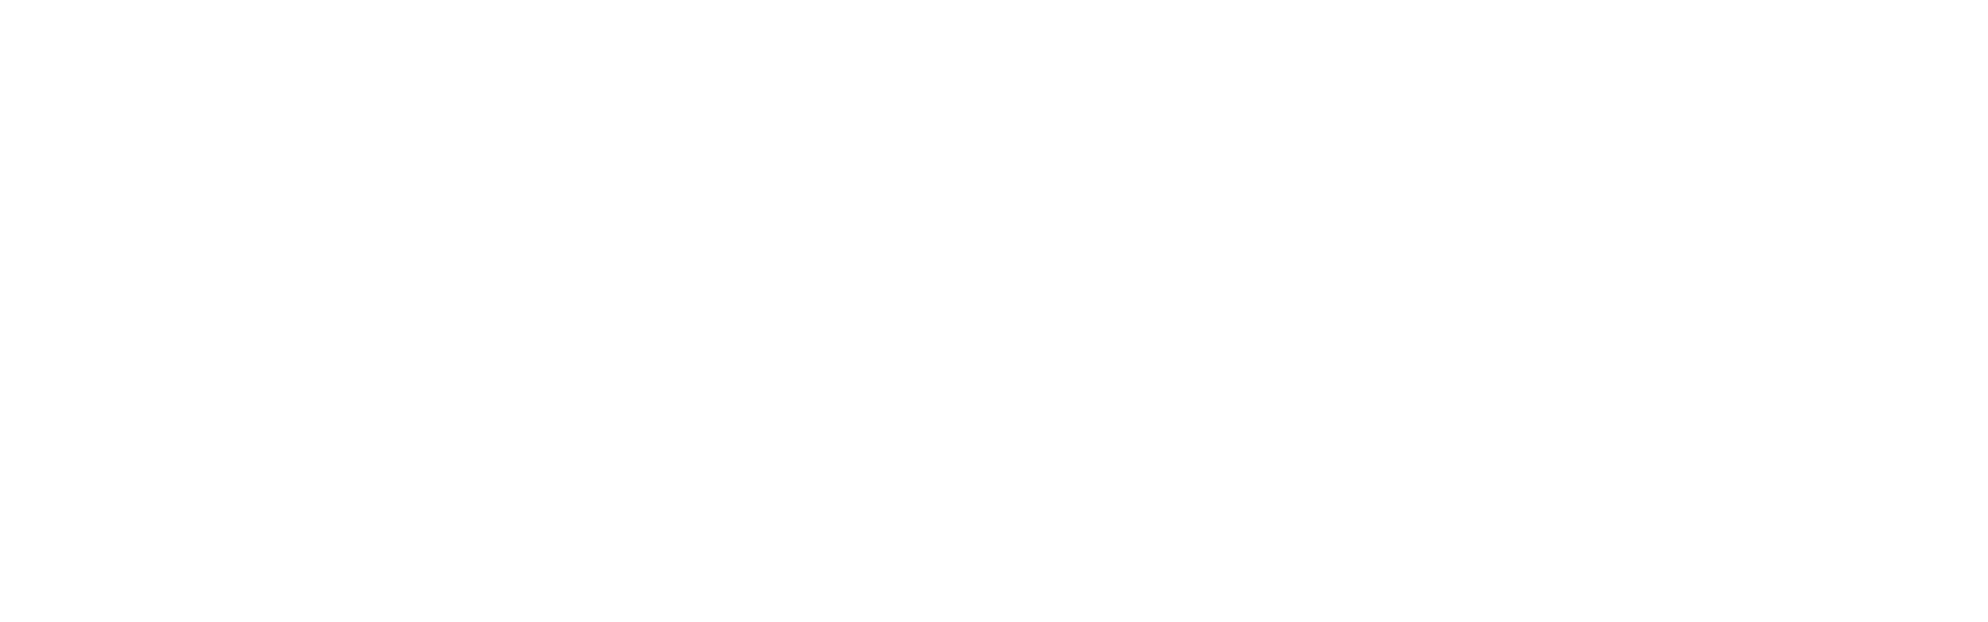 openff-interchange documentation logo